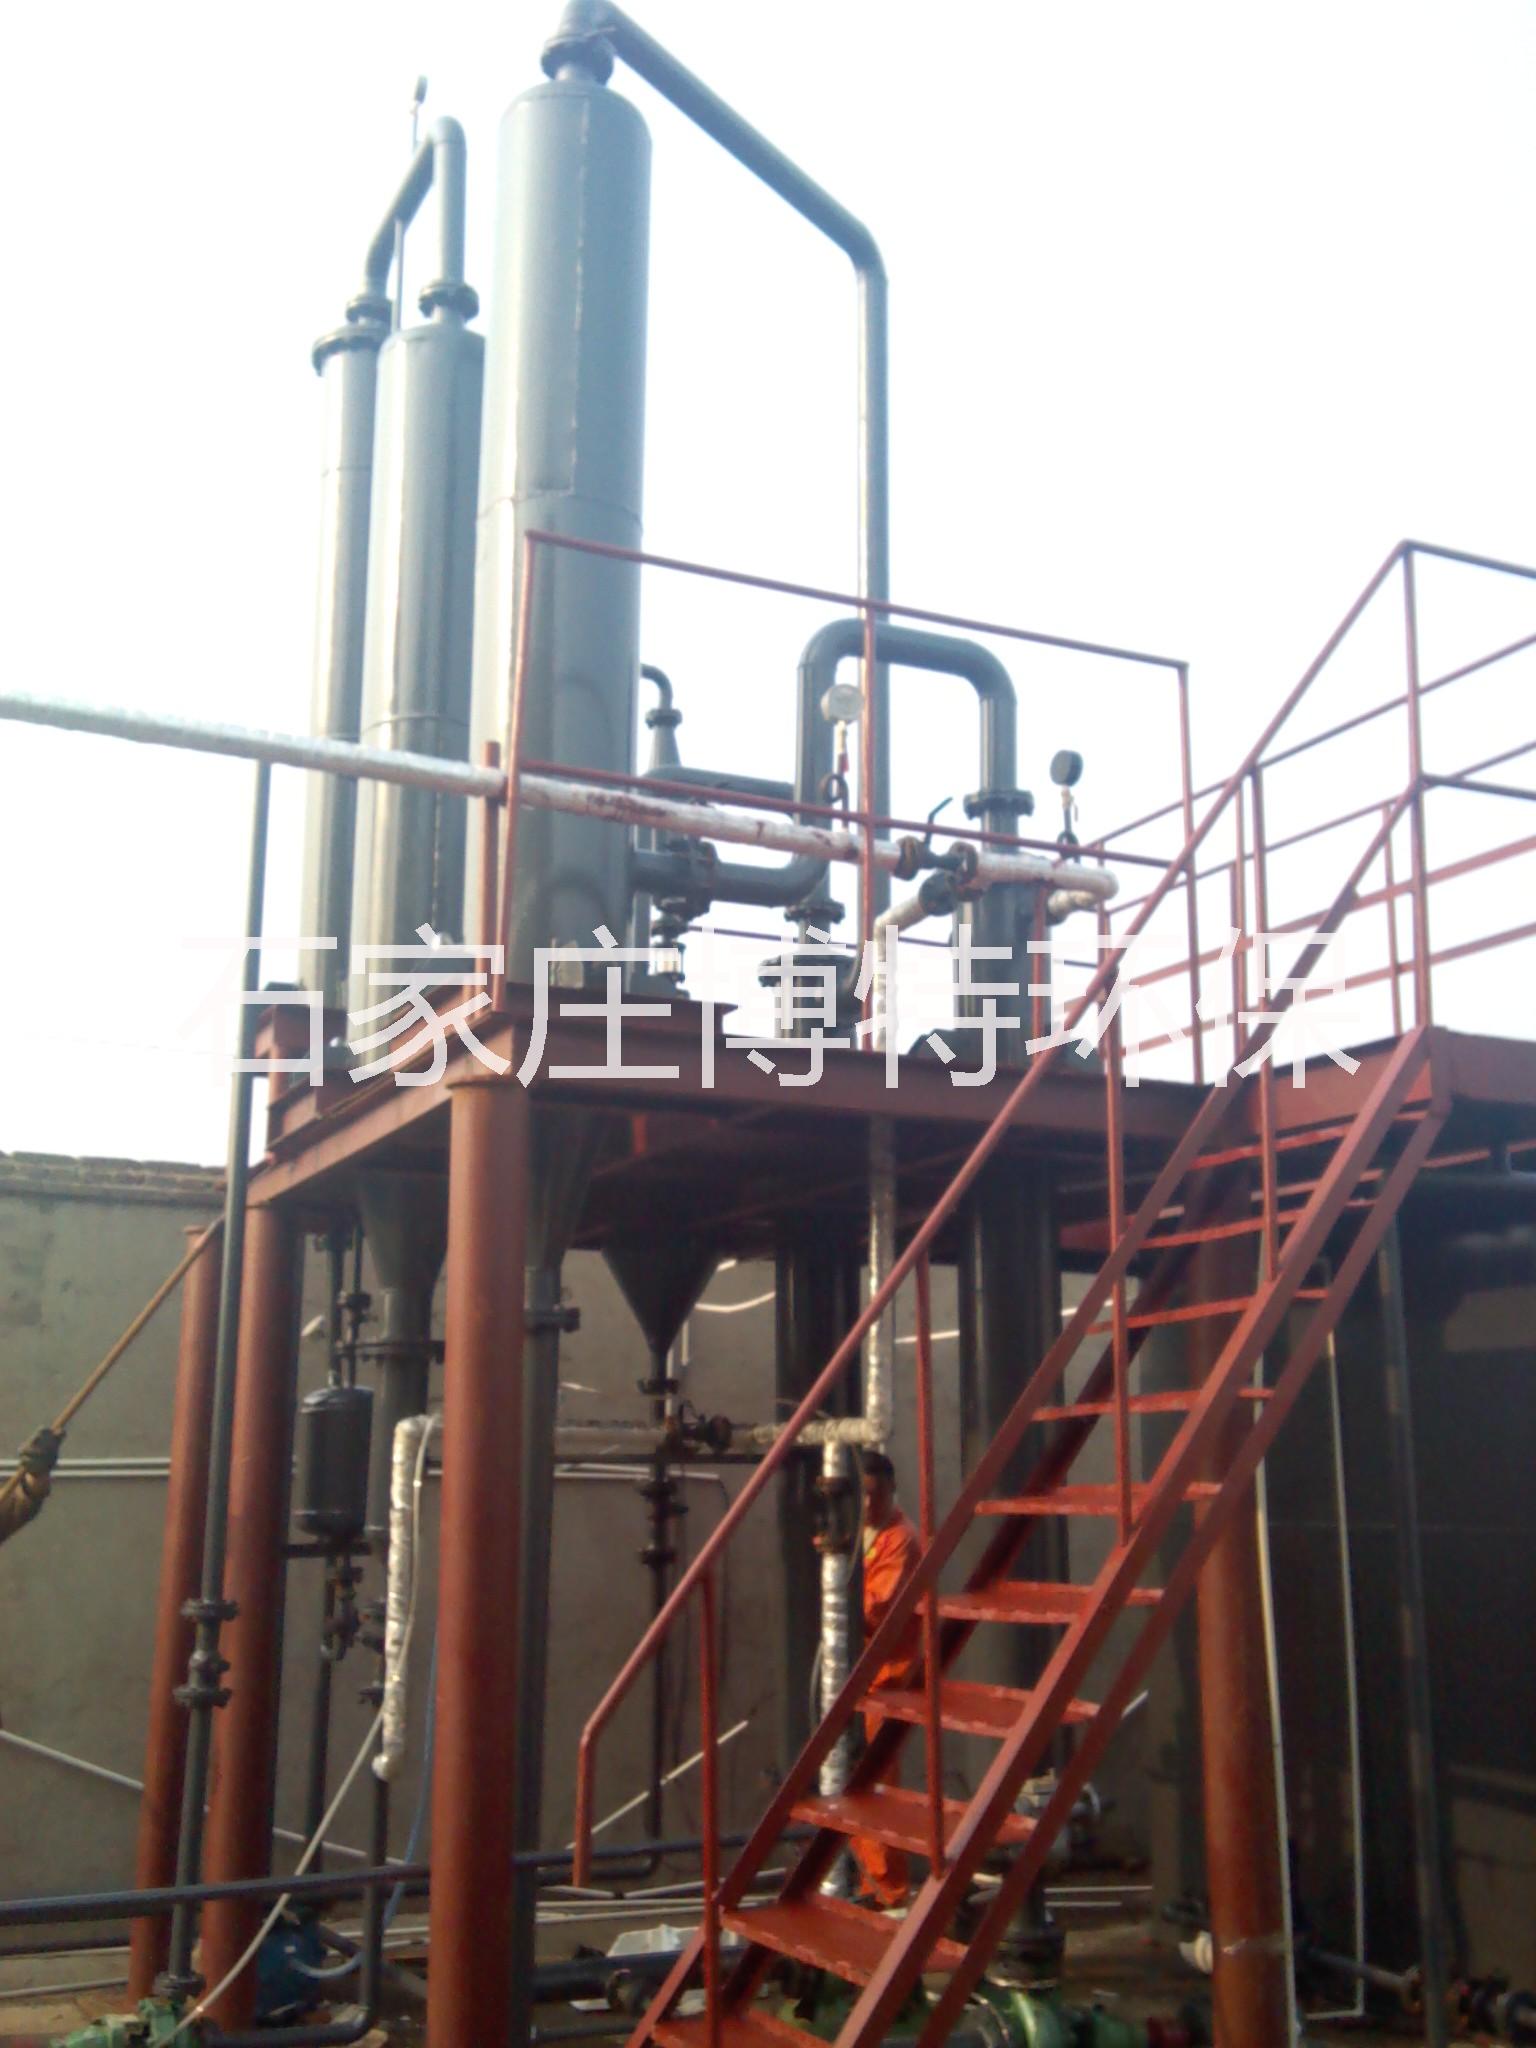 环氧树脂废水蒸发器